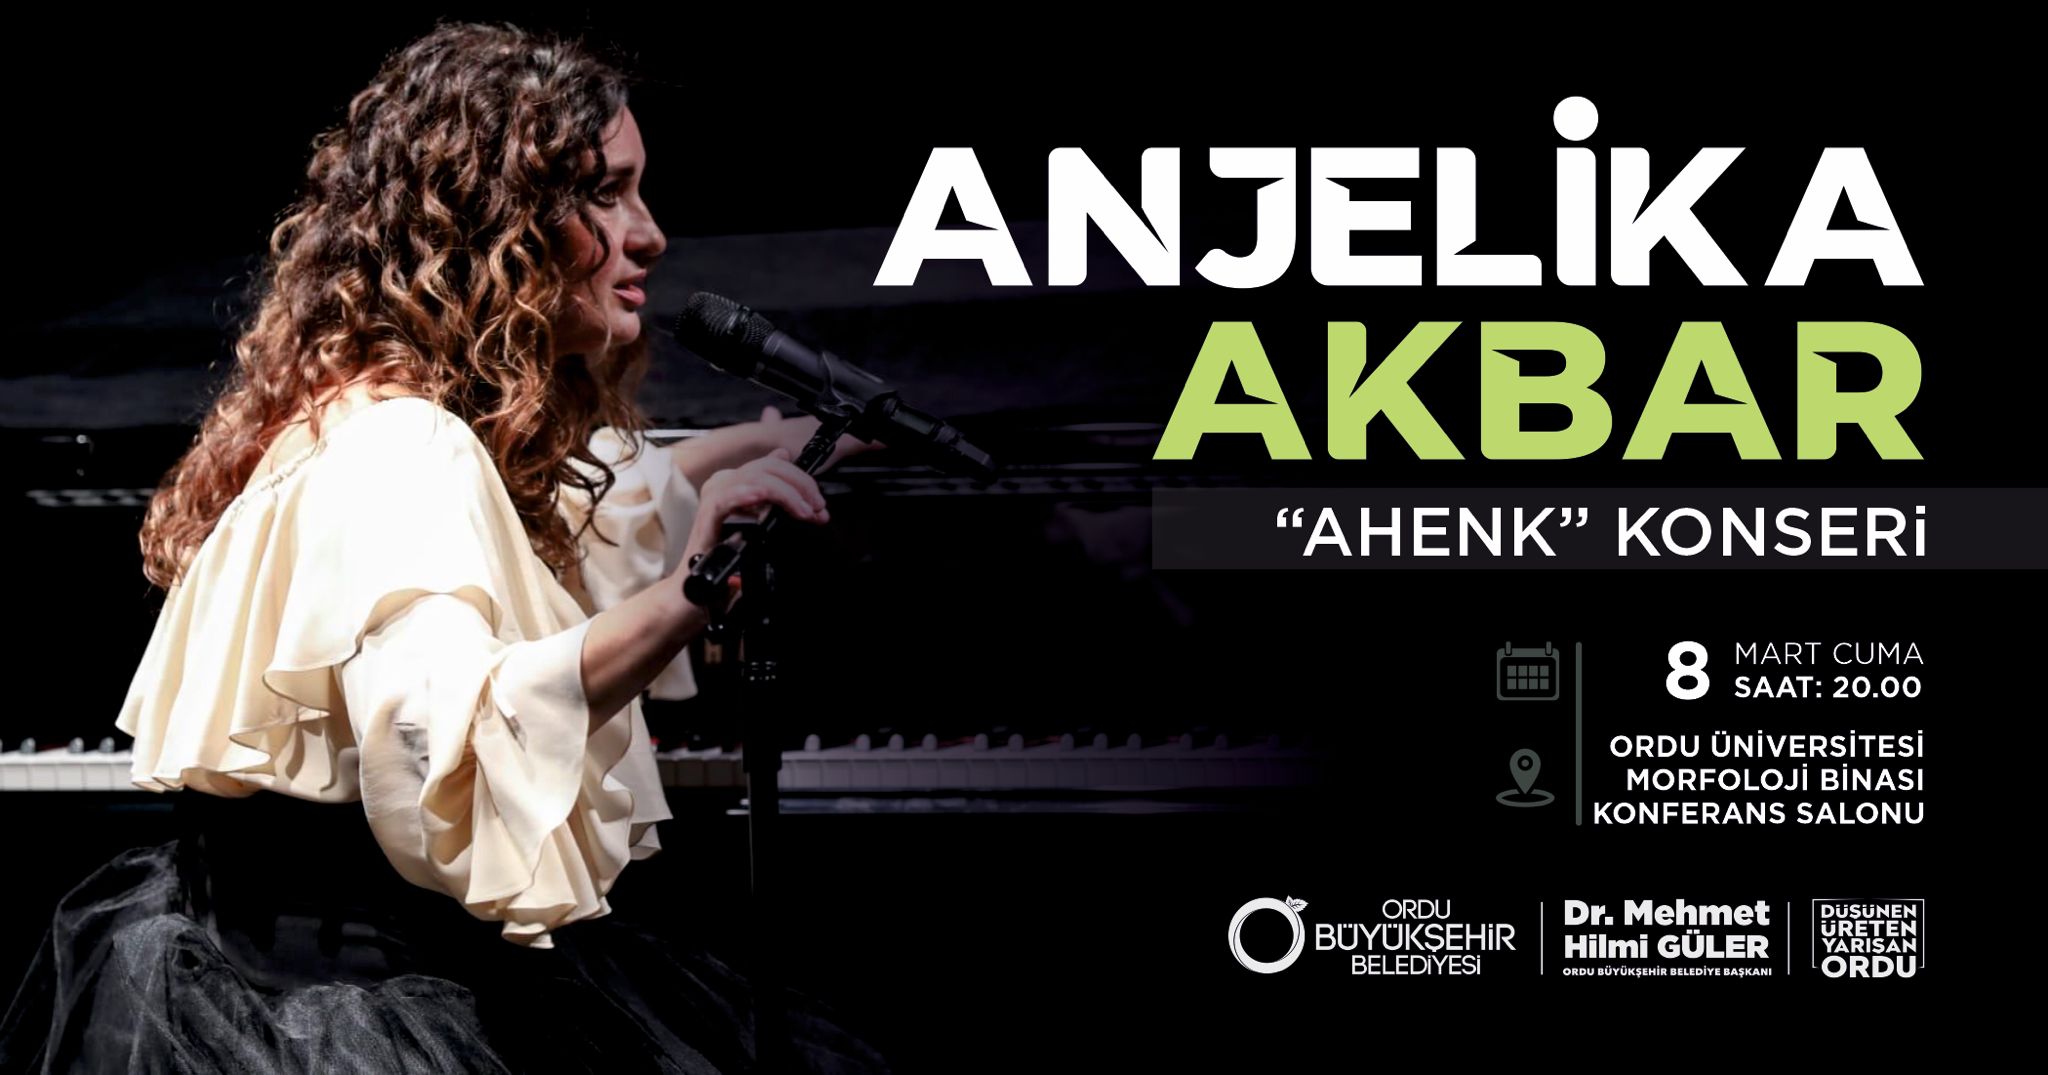 Dünyaca ünlü besteci Anjelika Akbar, Ordu'da unutulmaz bir konser verecek!